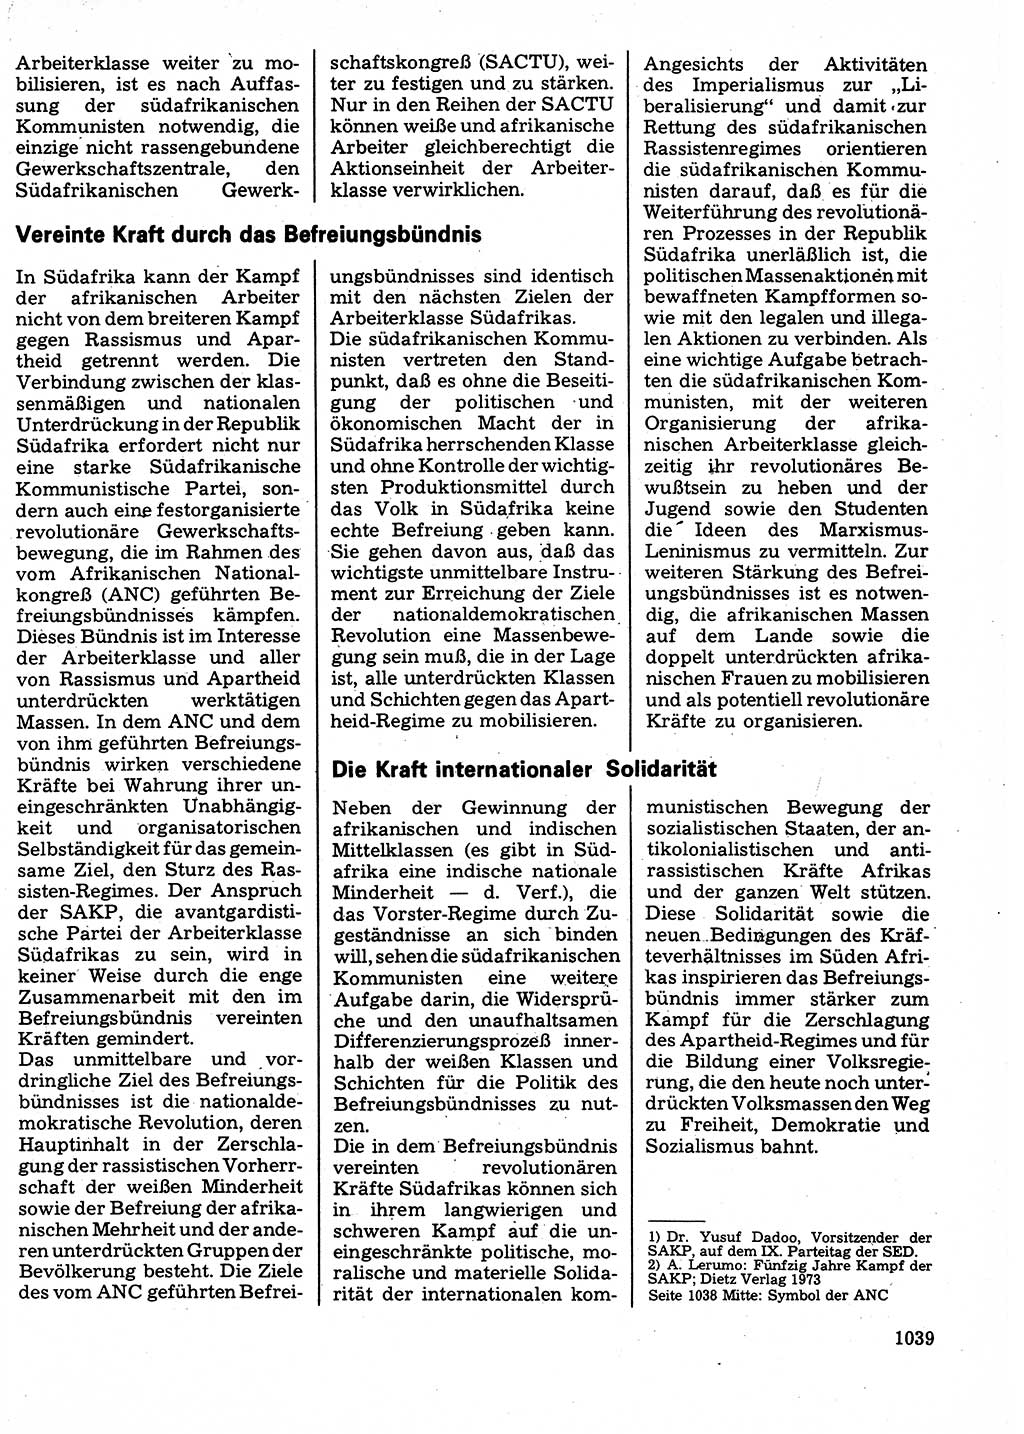 Neuer Weg (NW), Organ des Zentralkomitees (ZK) der SED (Sozialistische Einheitspartei Deutschlands) für Fragen des Parteilebens, 32. Jahrgang [Deutsche Demokratische Republik (DDR)] 1977, Seite 1039 (NW ZK SED DDR 1977, S. 1039)